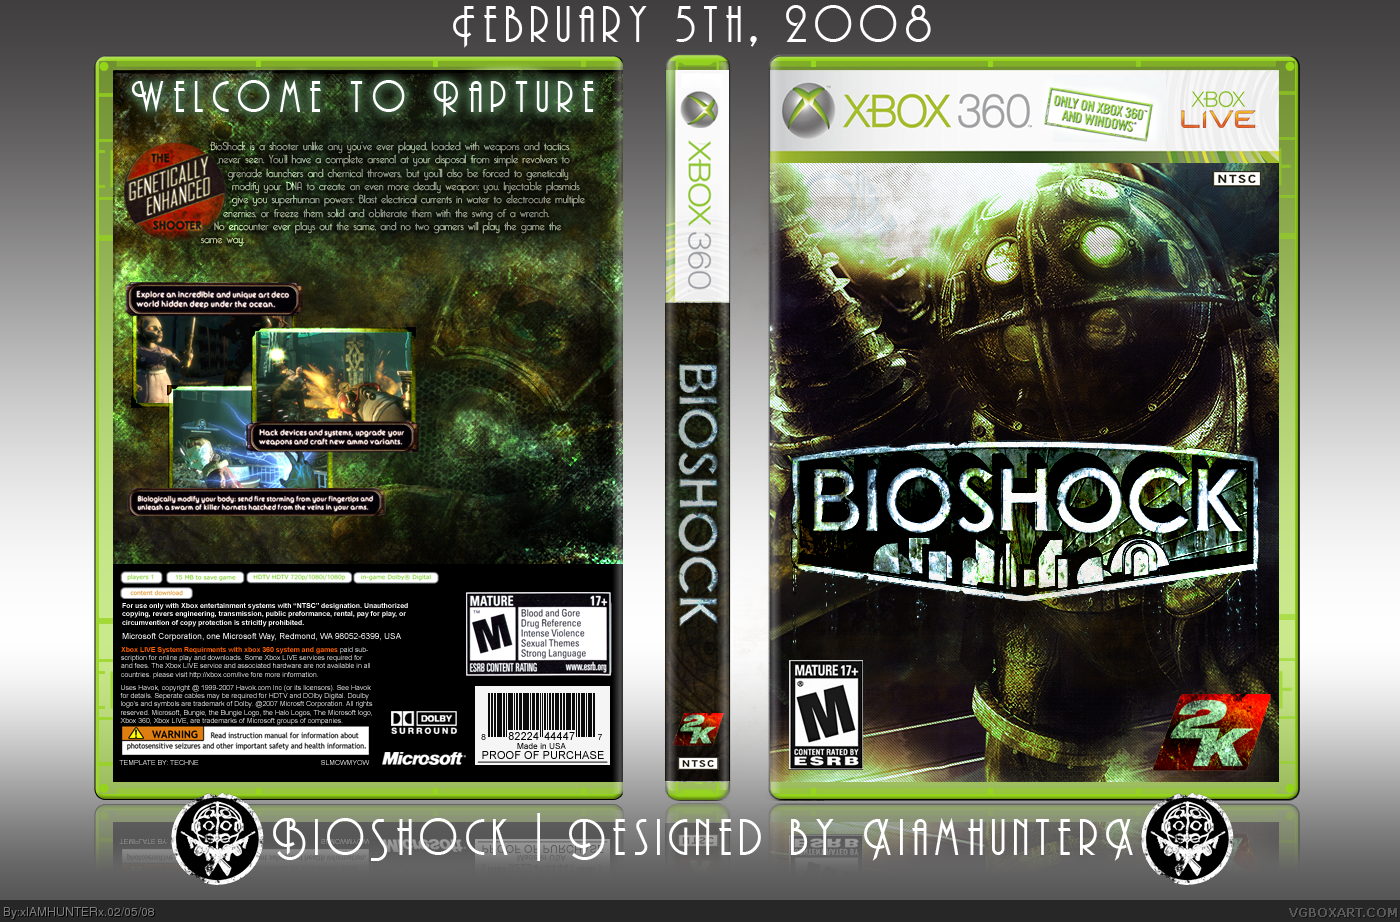 Сохранить игру xbox. Bioshock Xbox 360 обложка. Биошок 2 обложка иксбокс360. Bioshock 2 Xbox 360 обложка. Хвох 360 диск Bioshock 2.